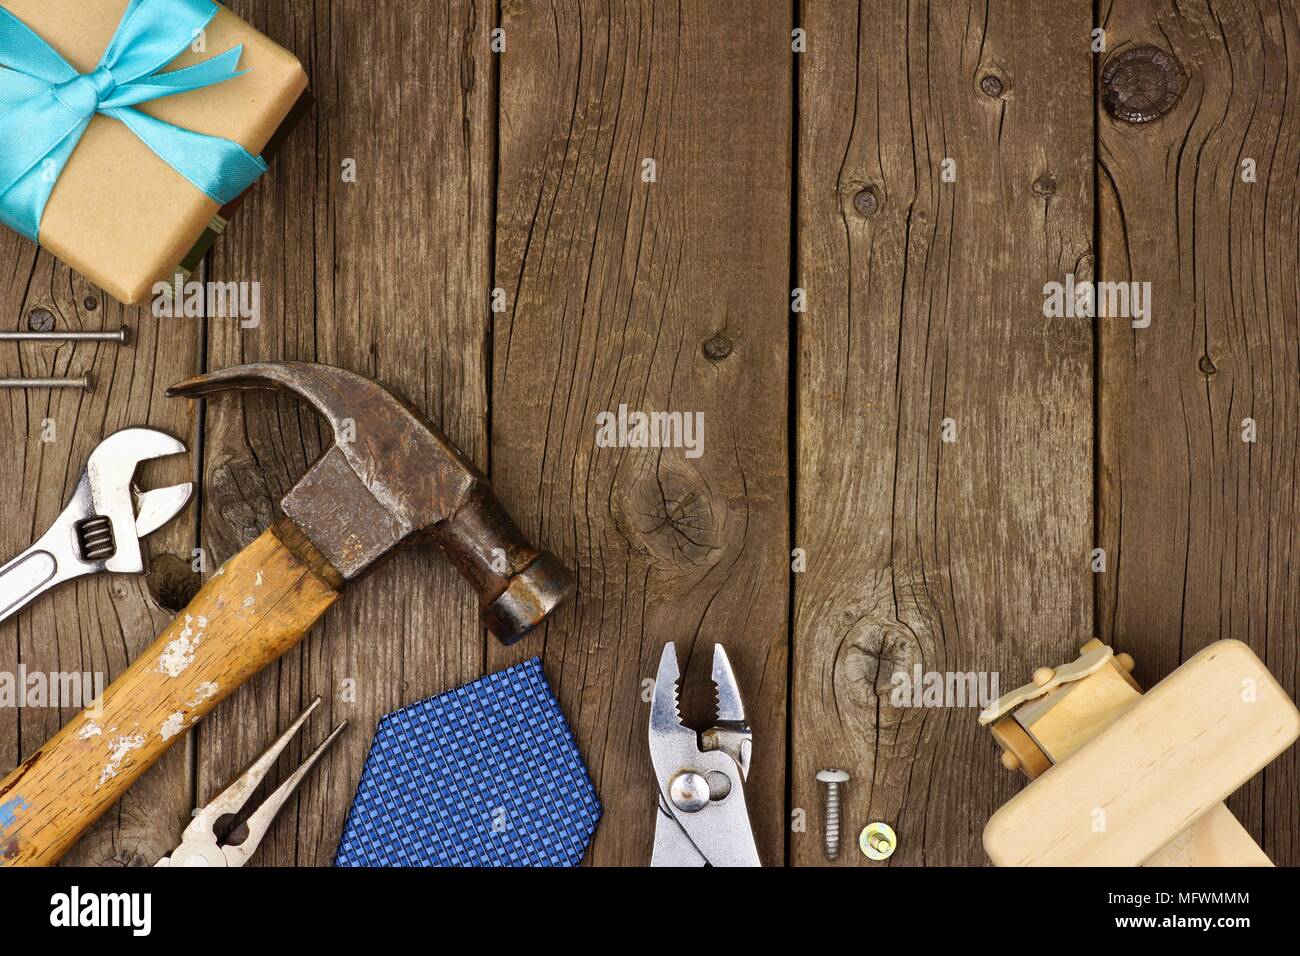 Le thème de la Fête des pères cadeaux de frontière de coin, barre d'outils et sur un fond de bois rustique. Vue de dessus avec l'exemplaire de l'espace. Banque D'Images